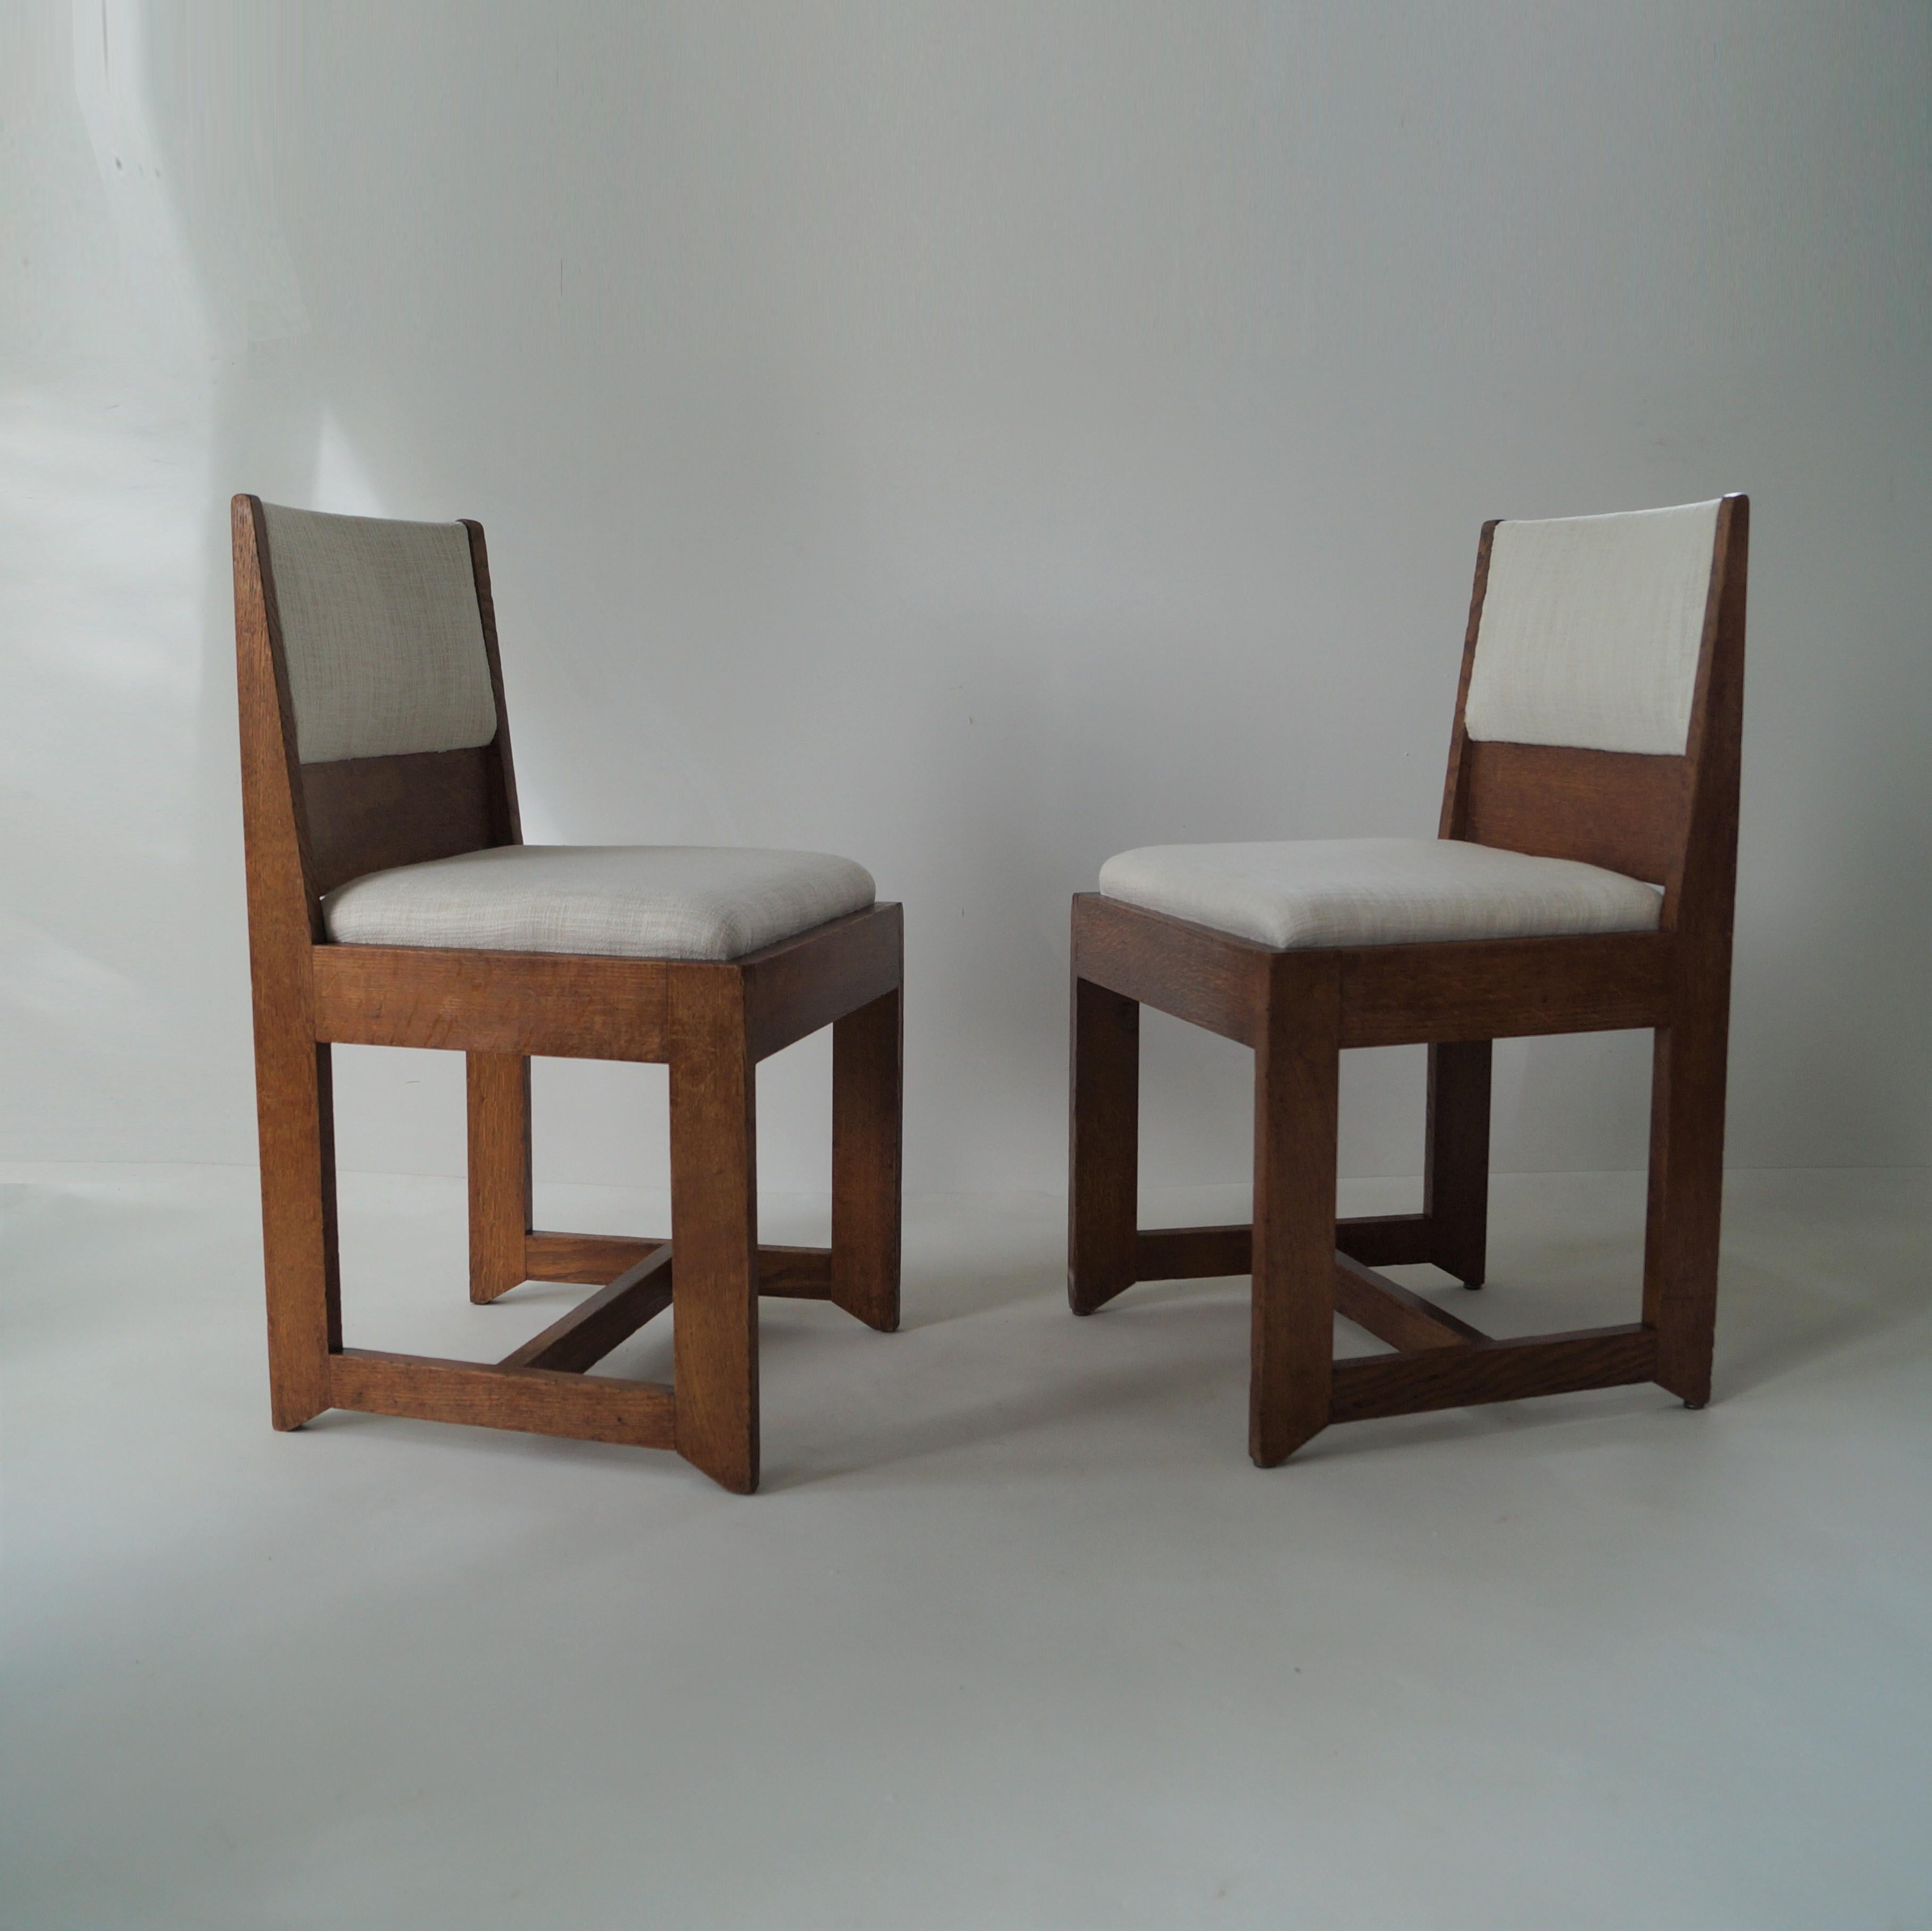 Ensemble de chaises de salle à manger ou d'appoint bij Hendrik Wouda pour Pander, 1924. Moderniste, rationaliste et école de Haagse. Les chaises sont retapissées dans un tissu clair. 

Hendrik Wouda (1885 - 1946) était un architecte, architecte